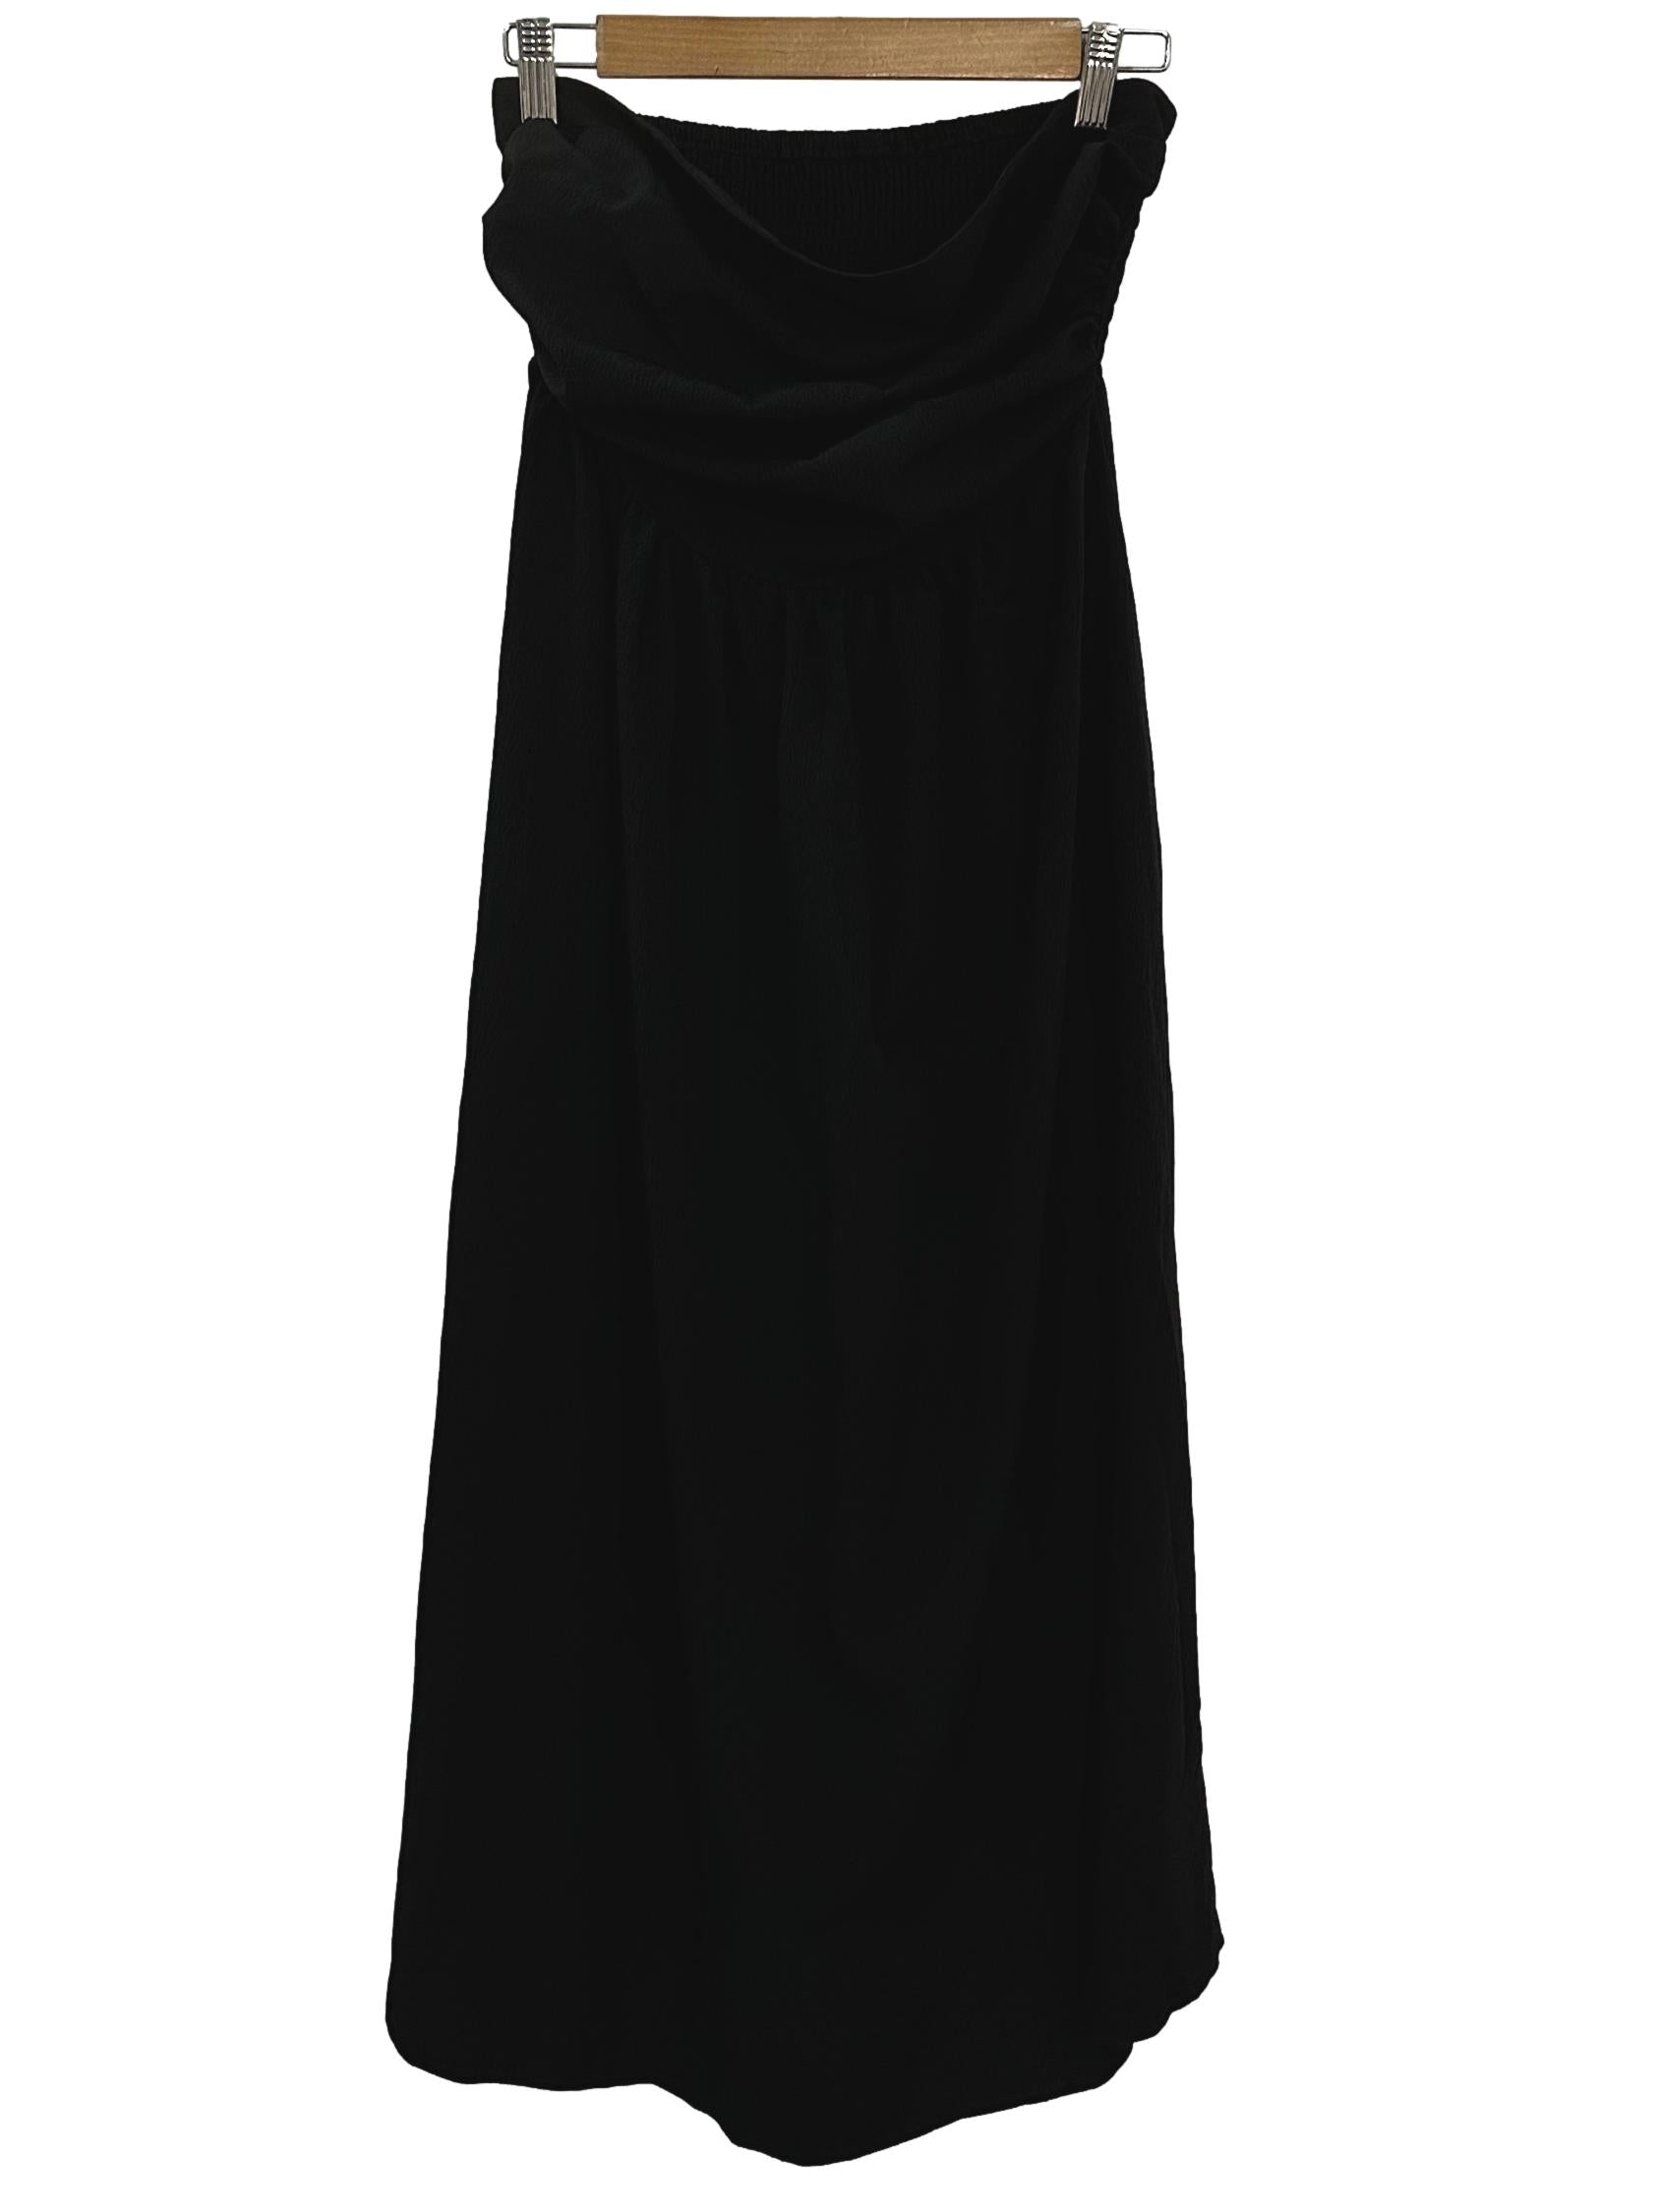 Raven Black Tube Midi Dress